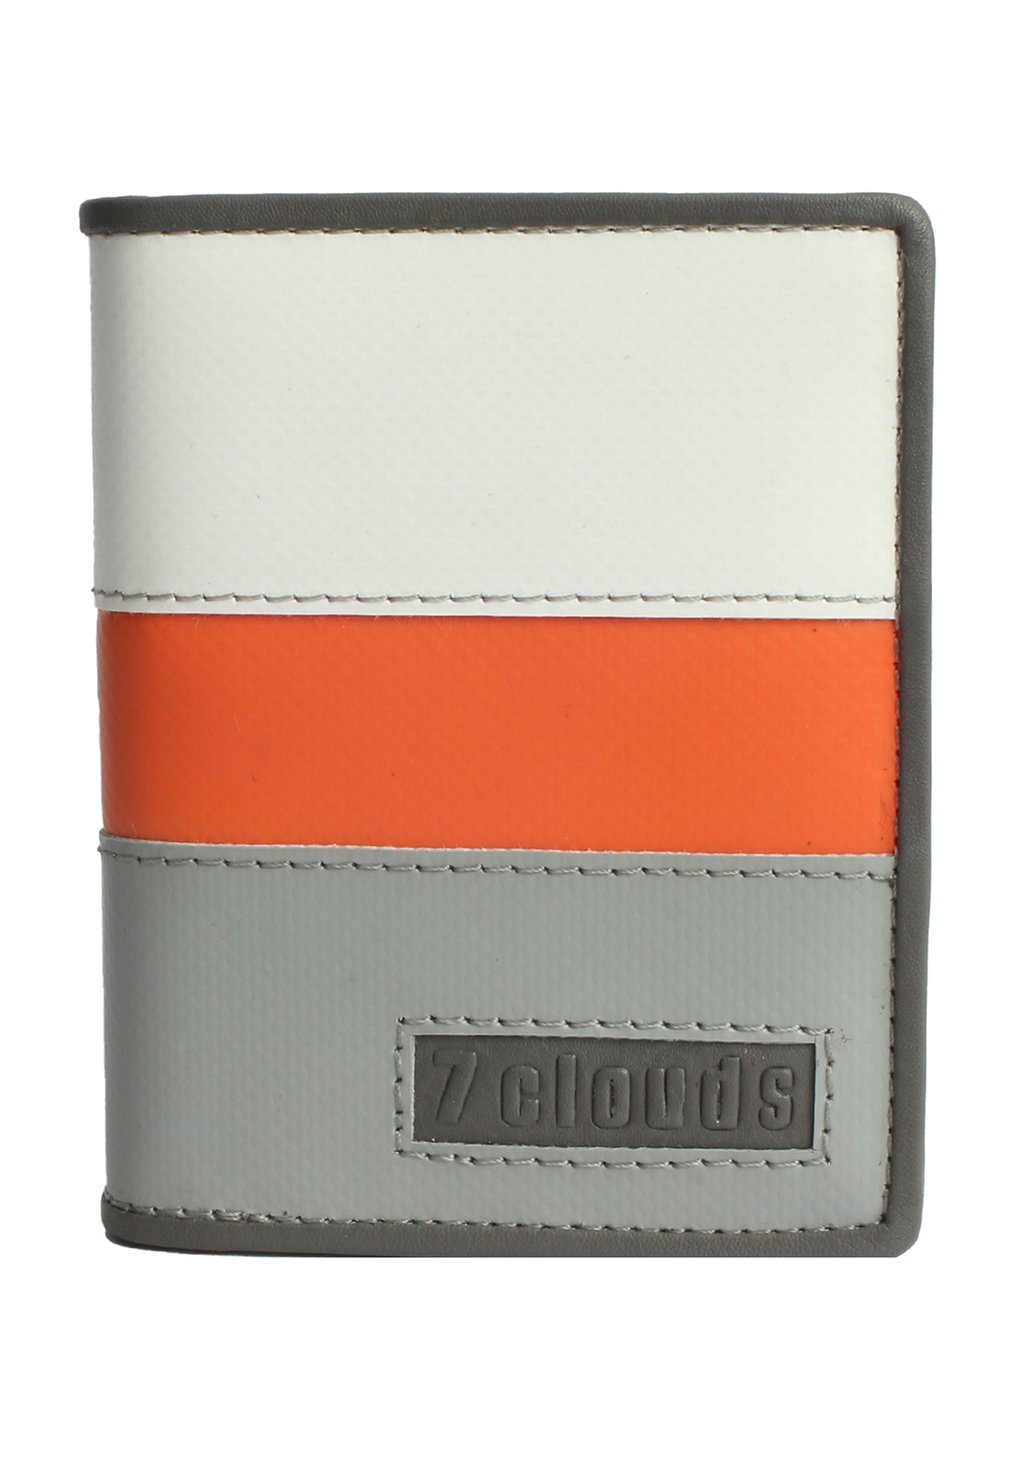 Кошелек RFID-KERON 71 7Clouds, цвет white orange grey